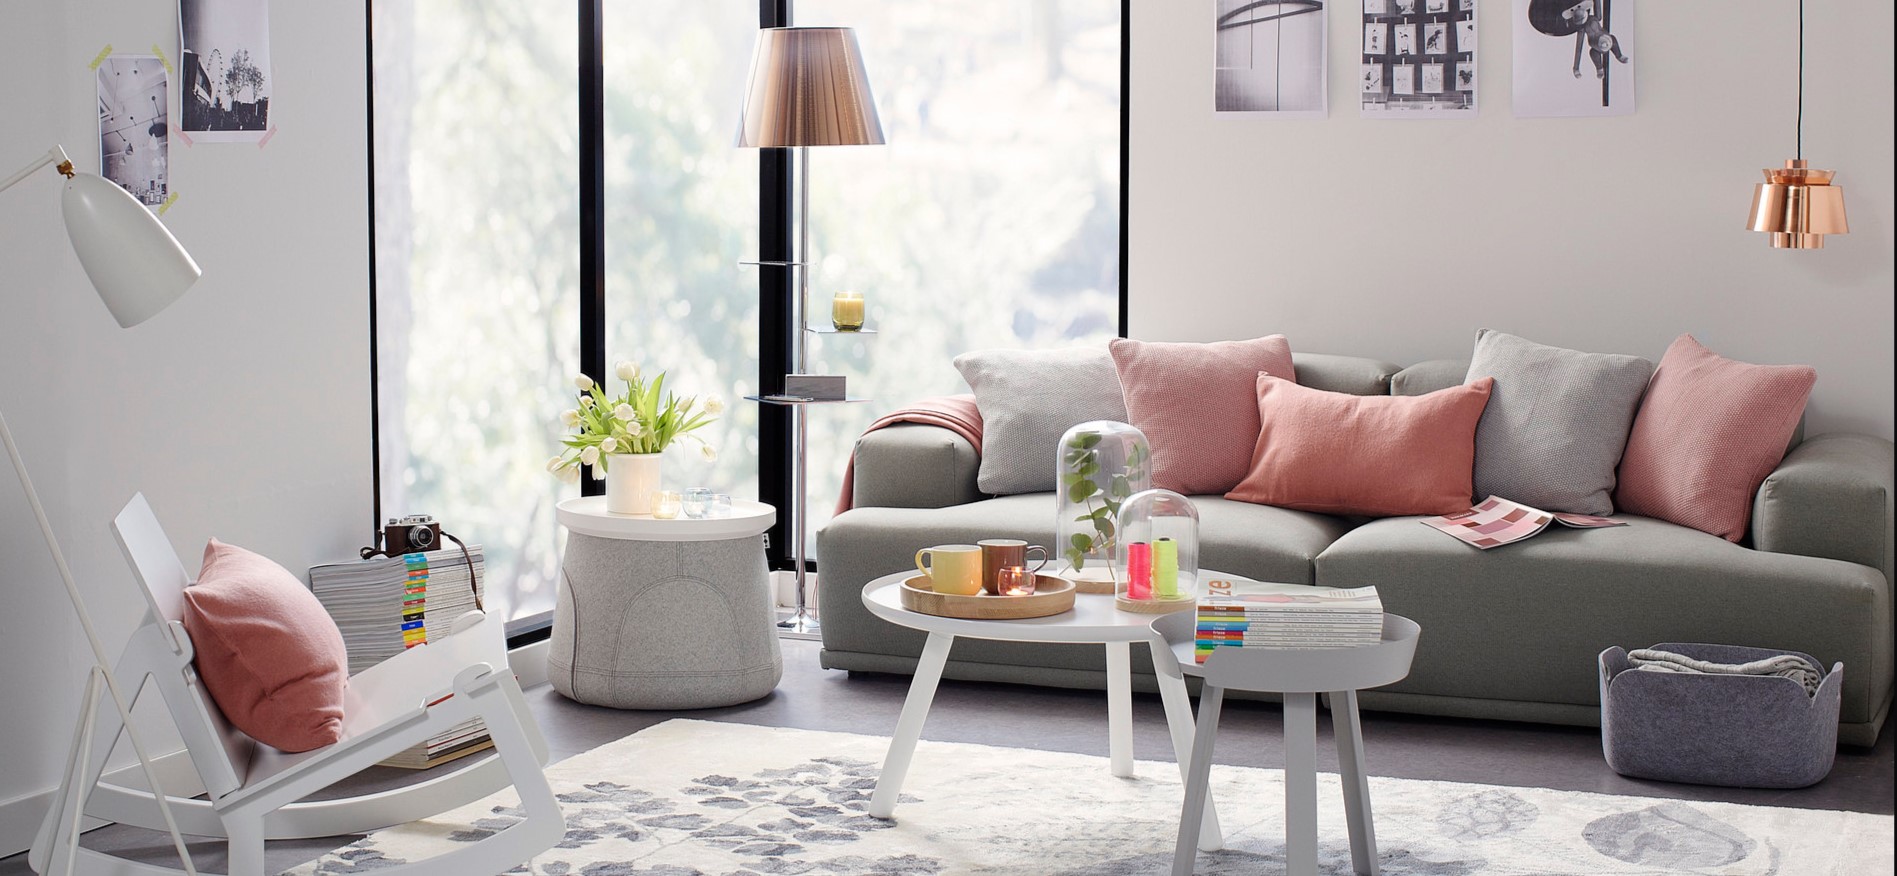 Однотонные подушки станут отличным украшением гостиной в стиле минимализм